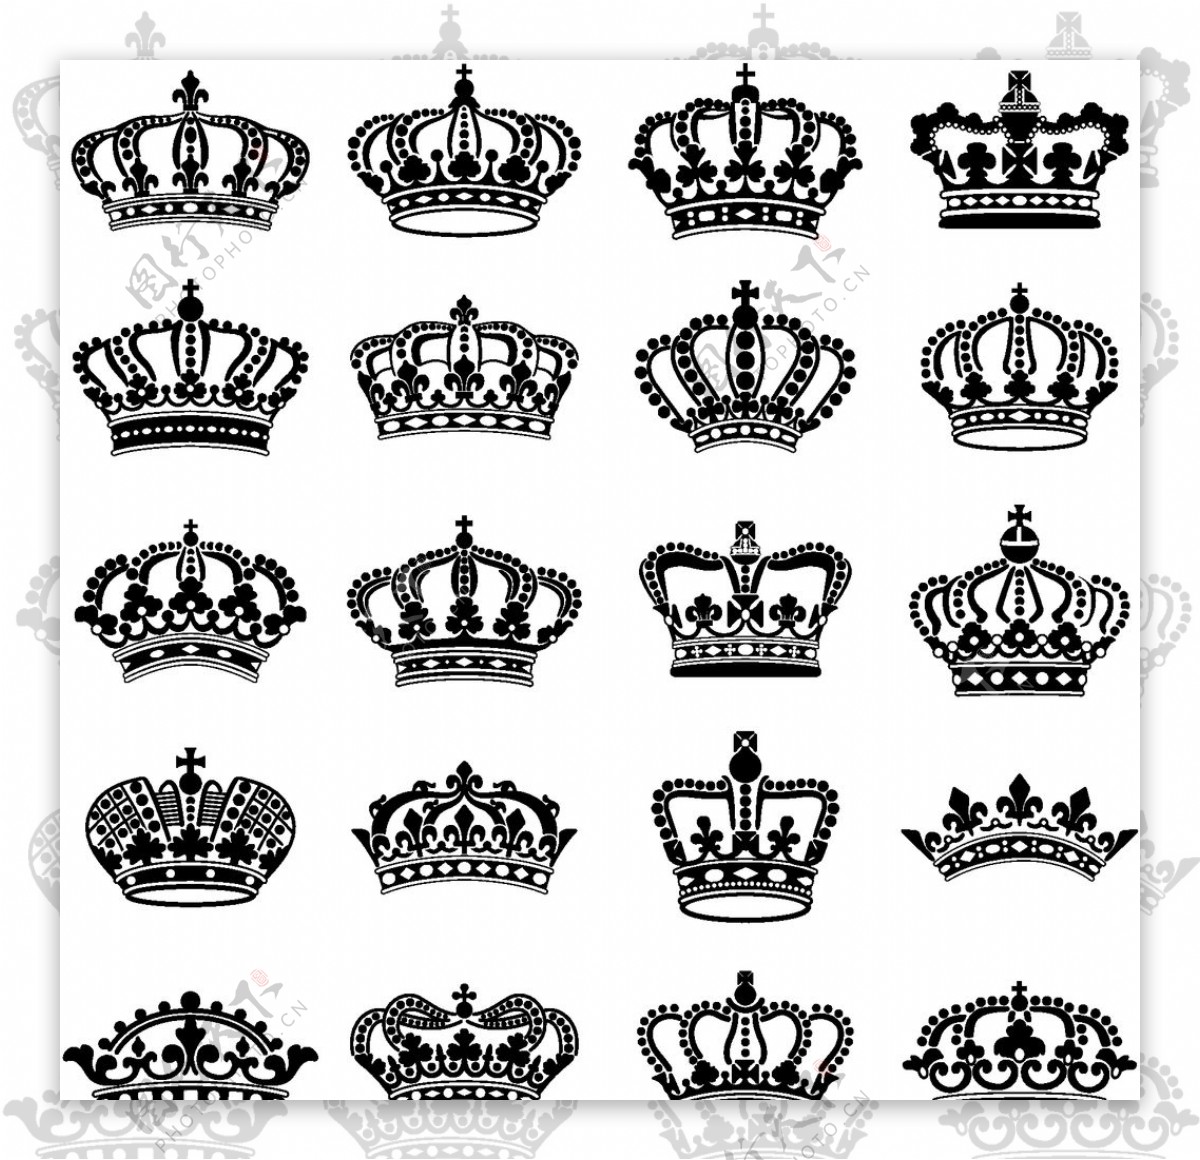 皇冠王冠矢量图图片